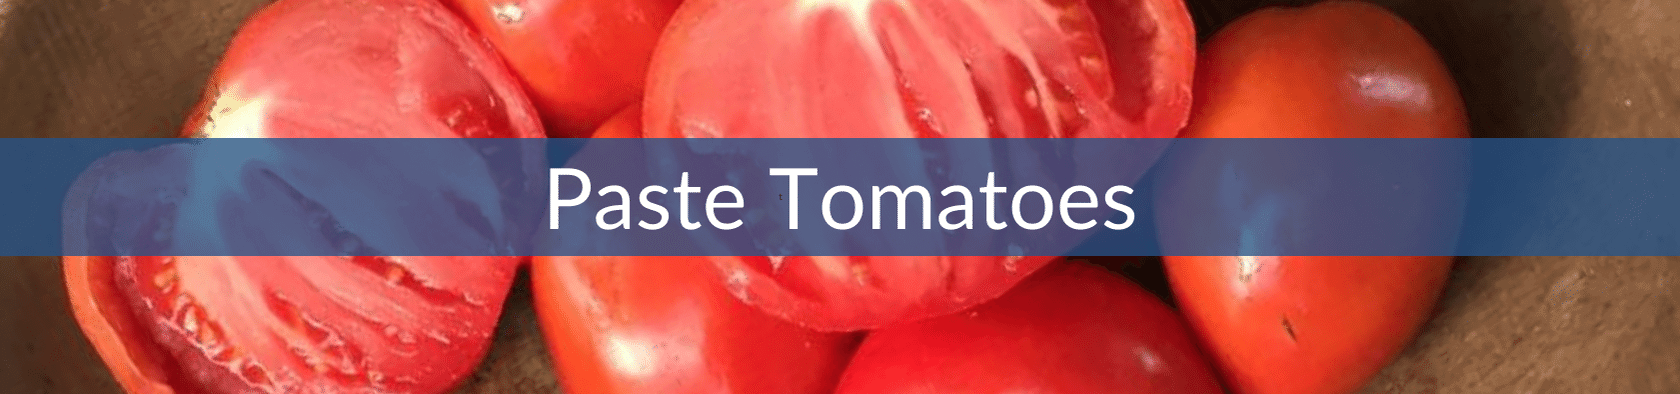 Pasting Tomatoes (1).png__PID:e21a6e3a-051e-4219-839f-57e1dfe59b3e